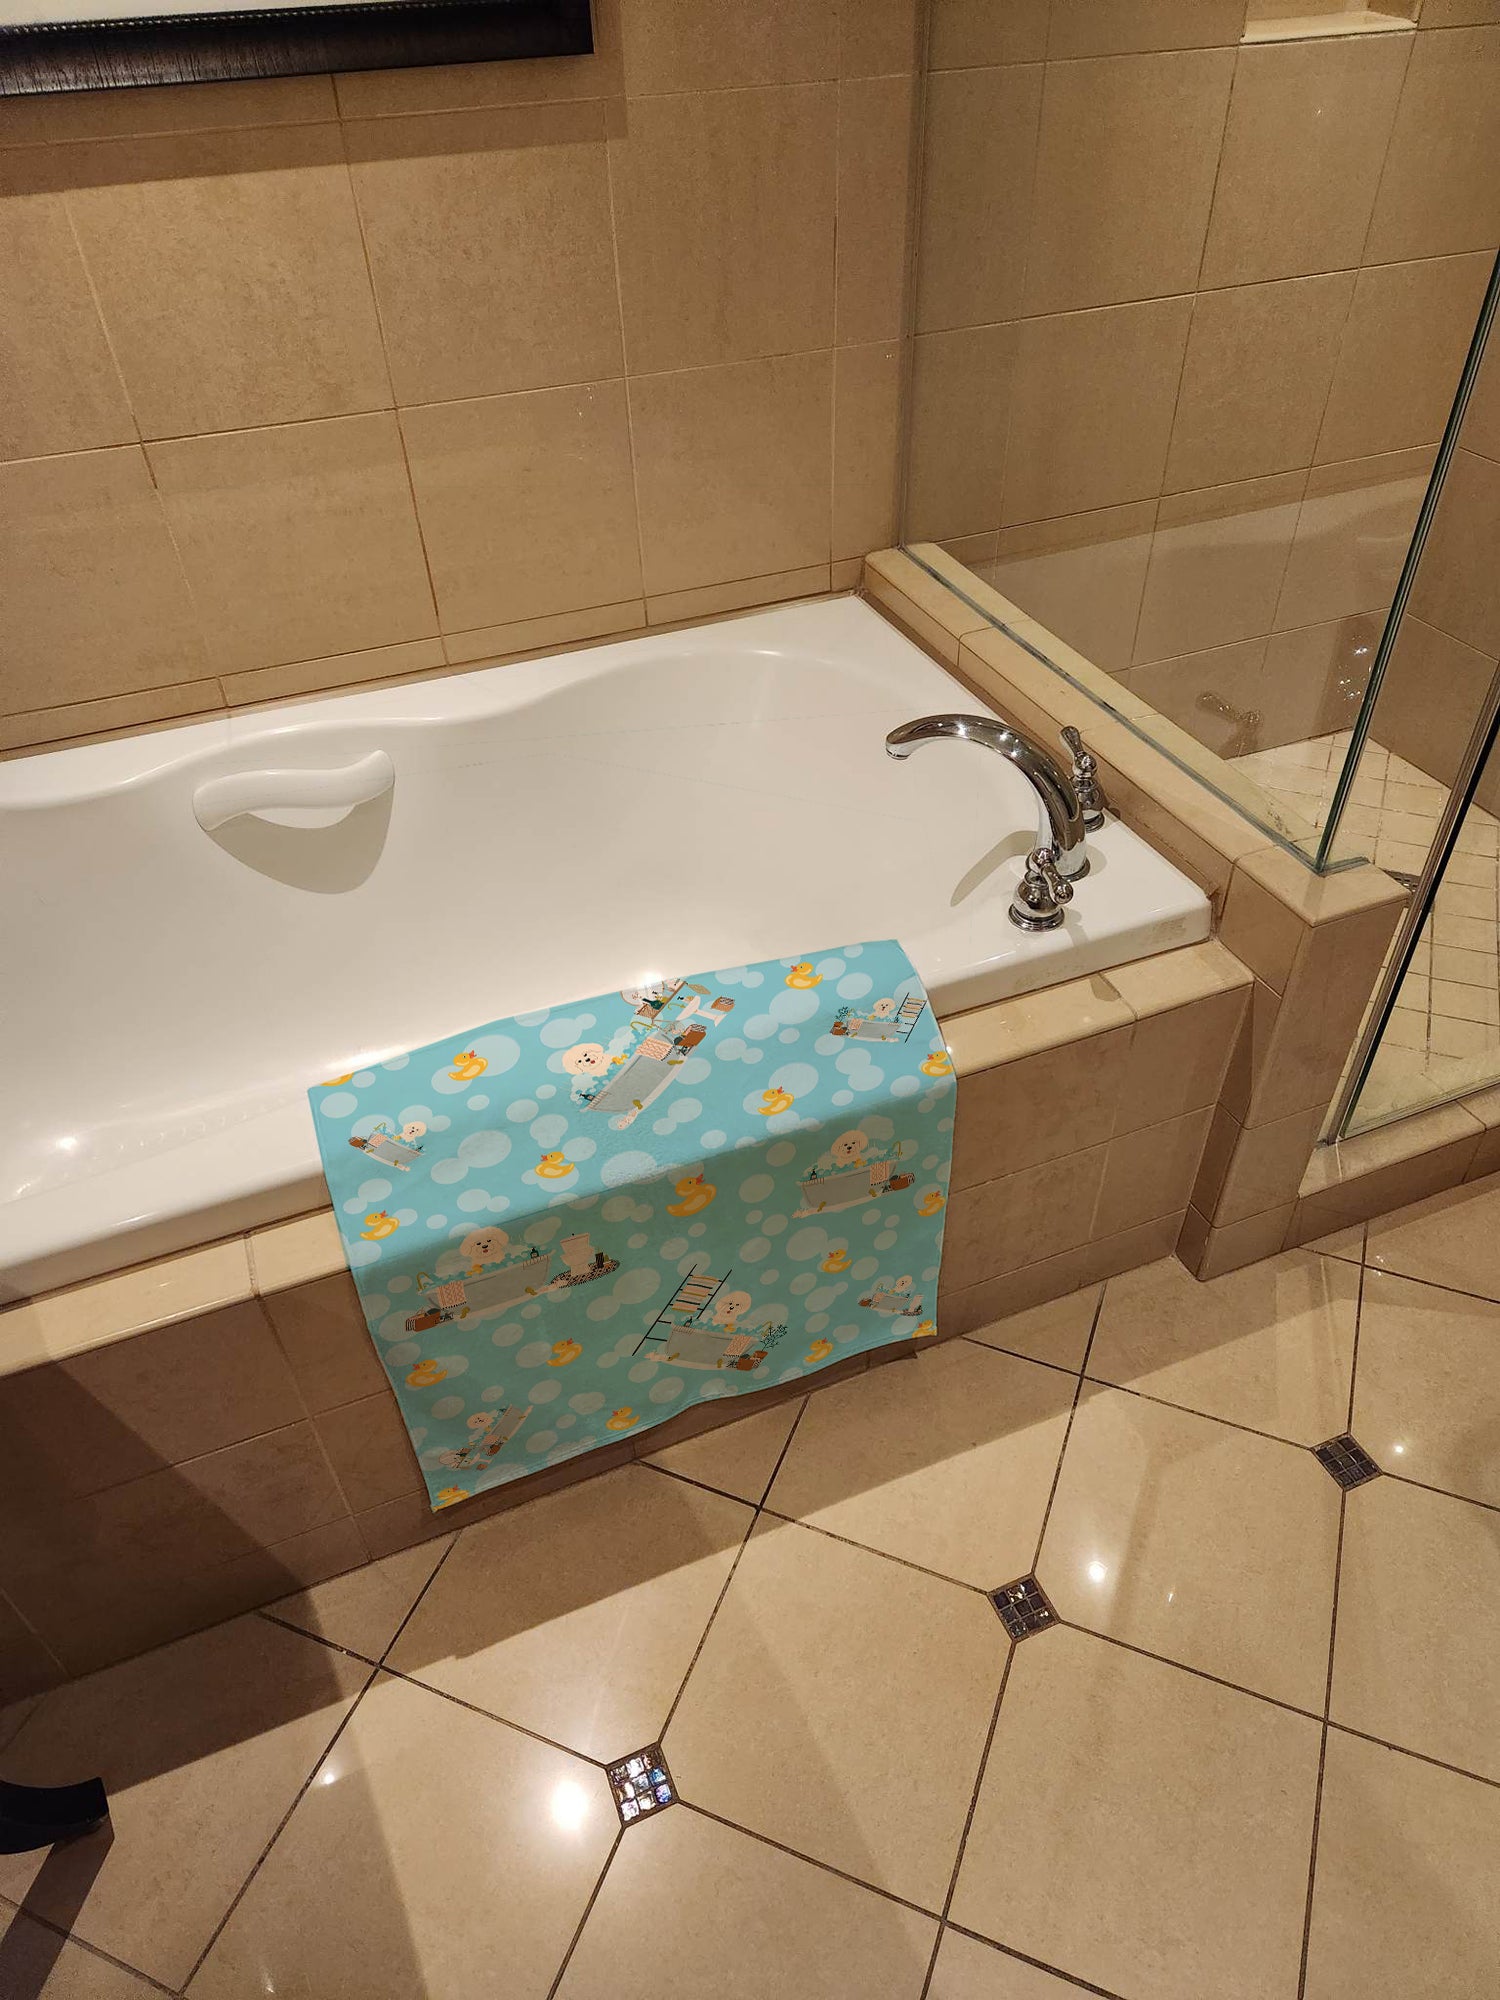 Bichon Frise in Bathtub Bath Towel Large